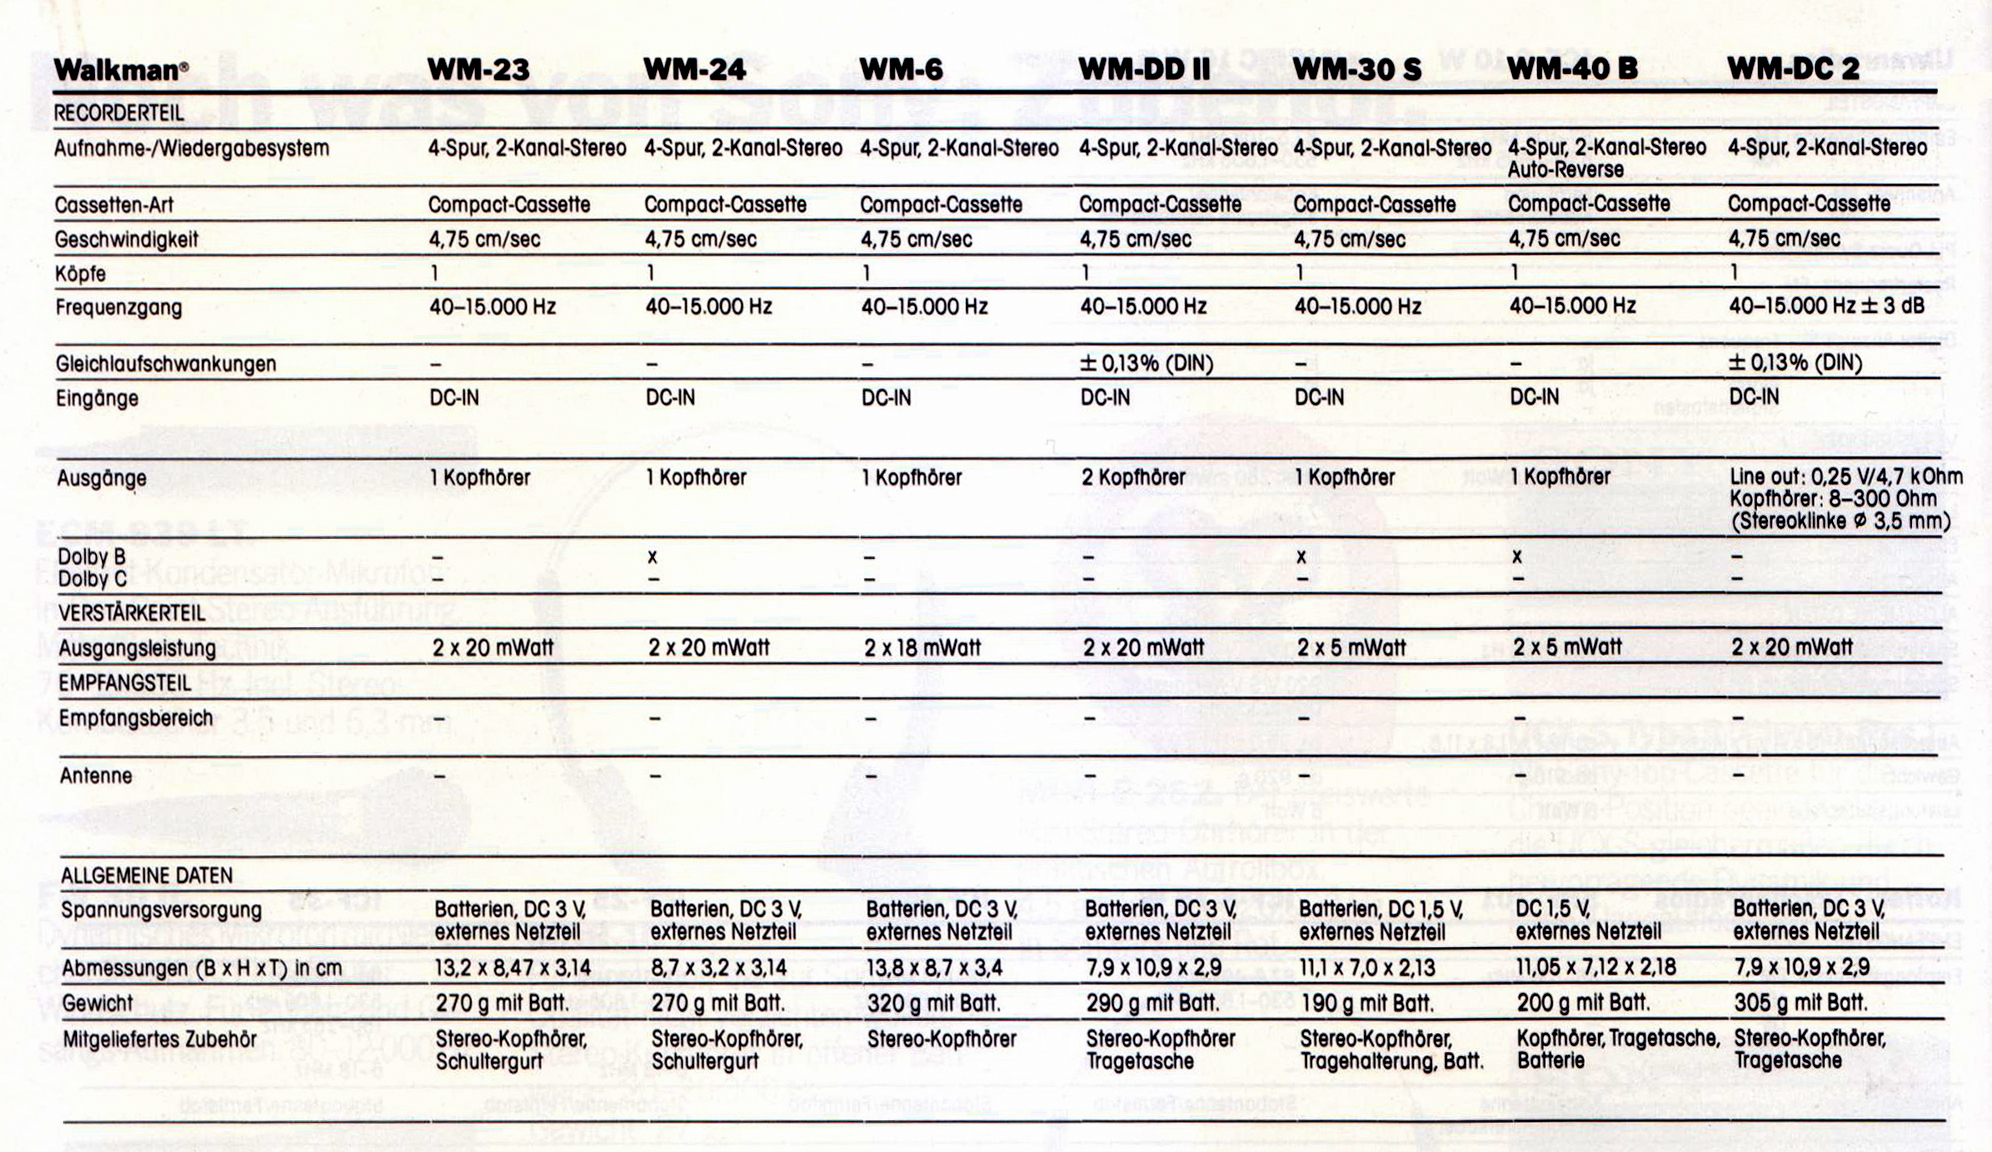 Sony WM- Daten 1986.jpg